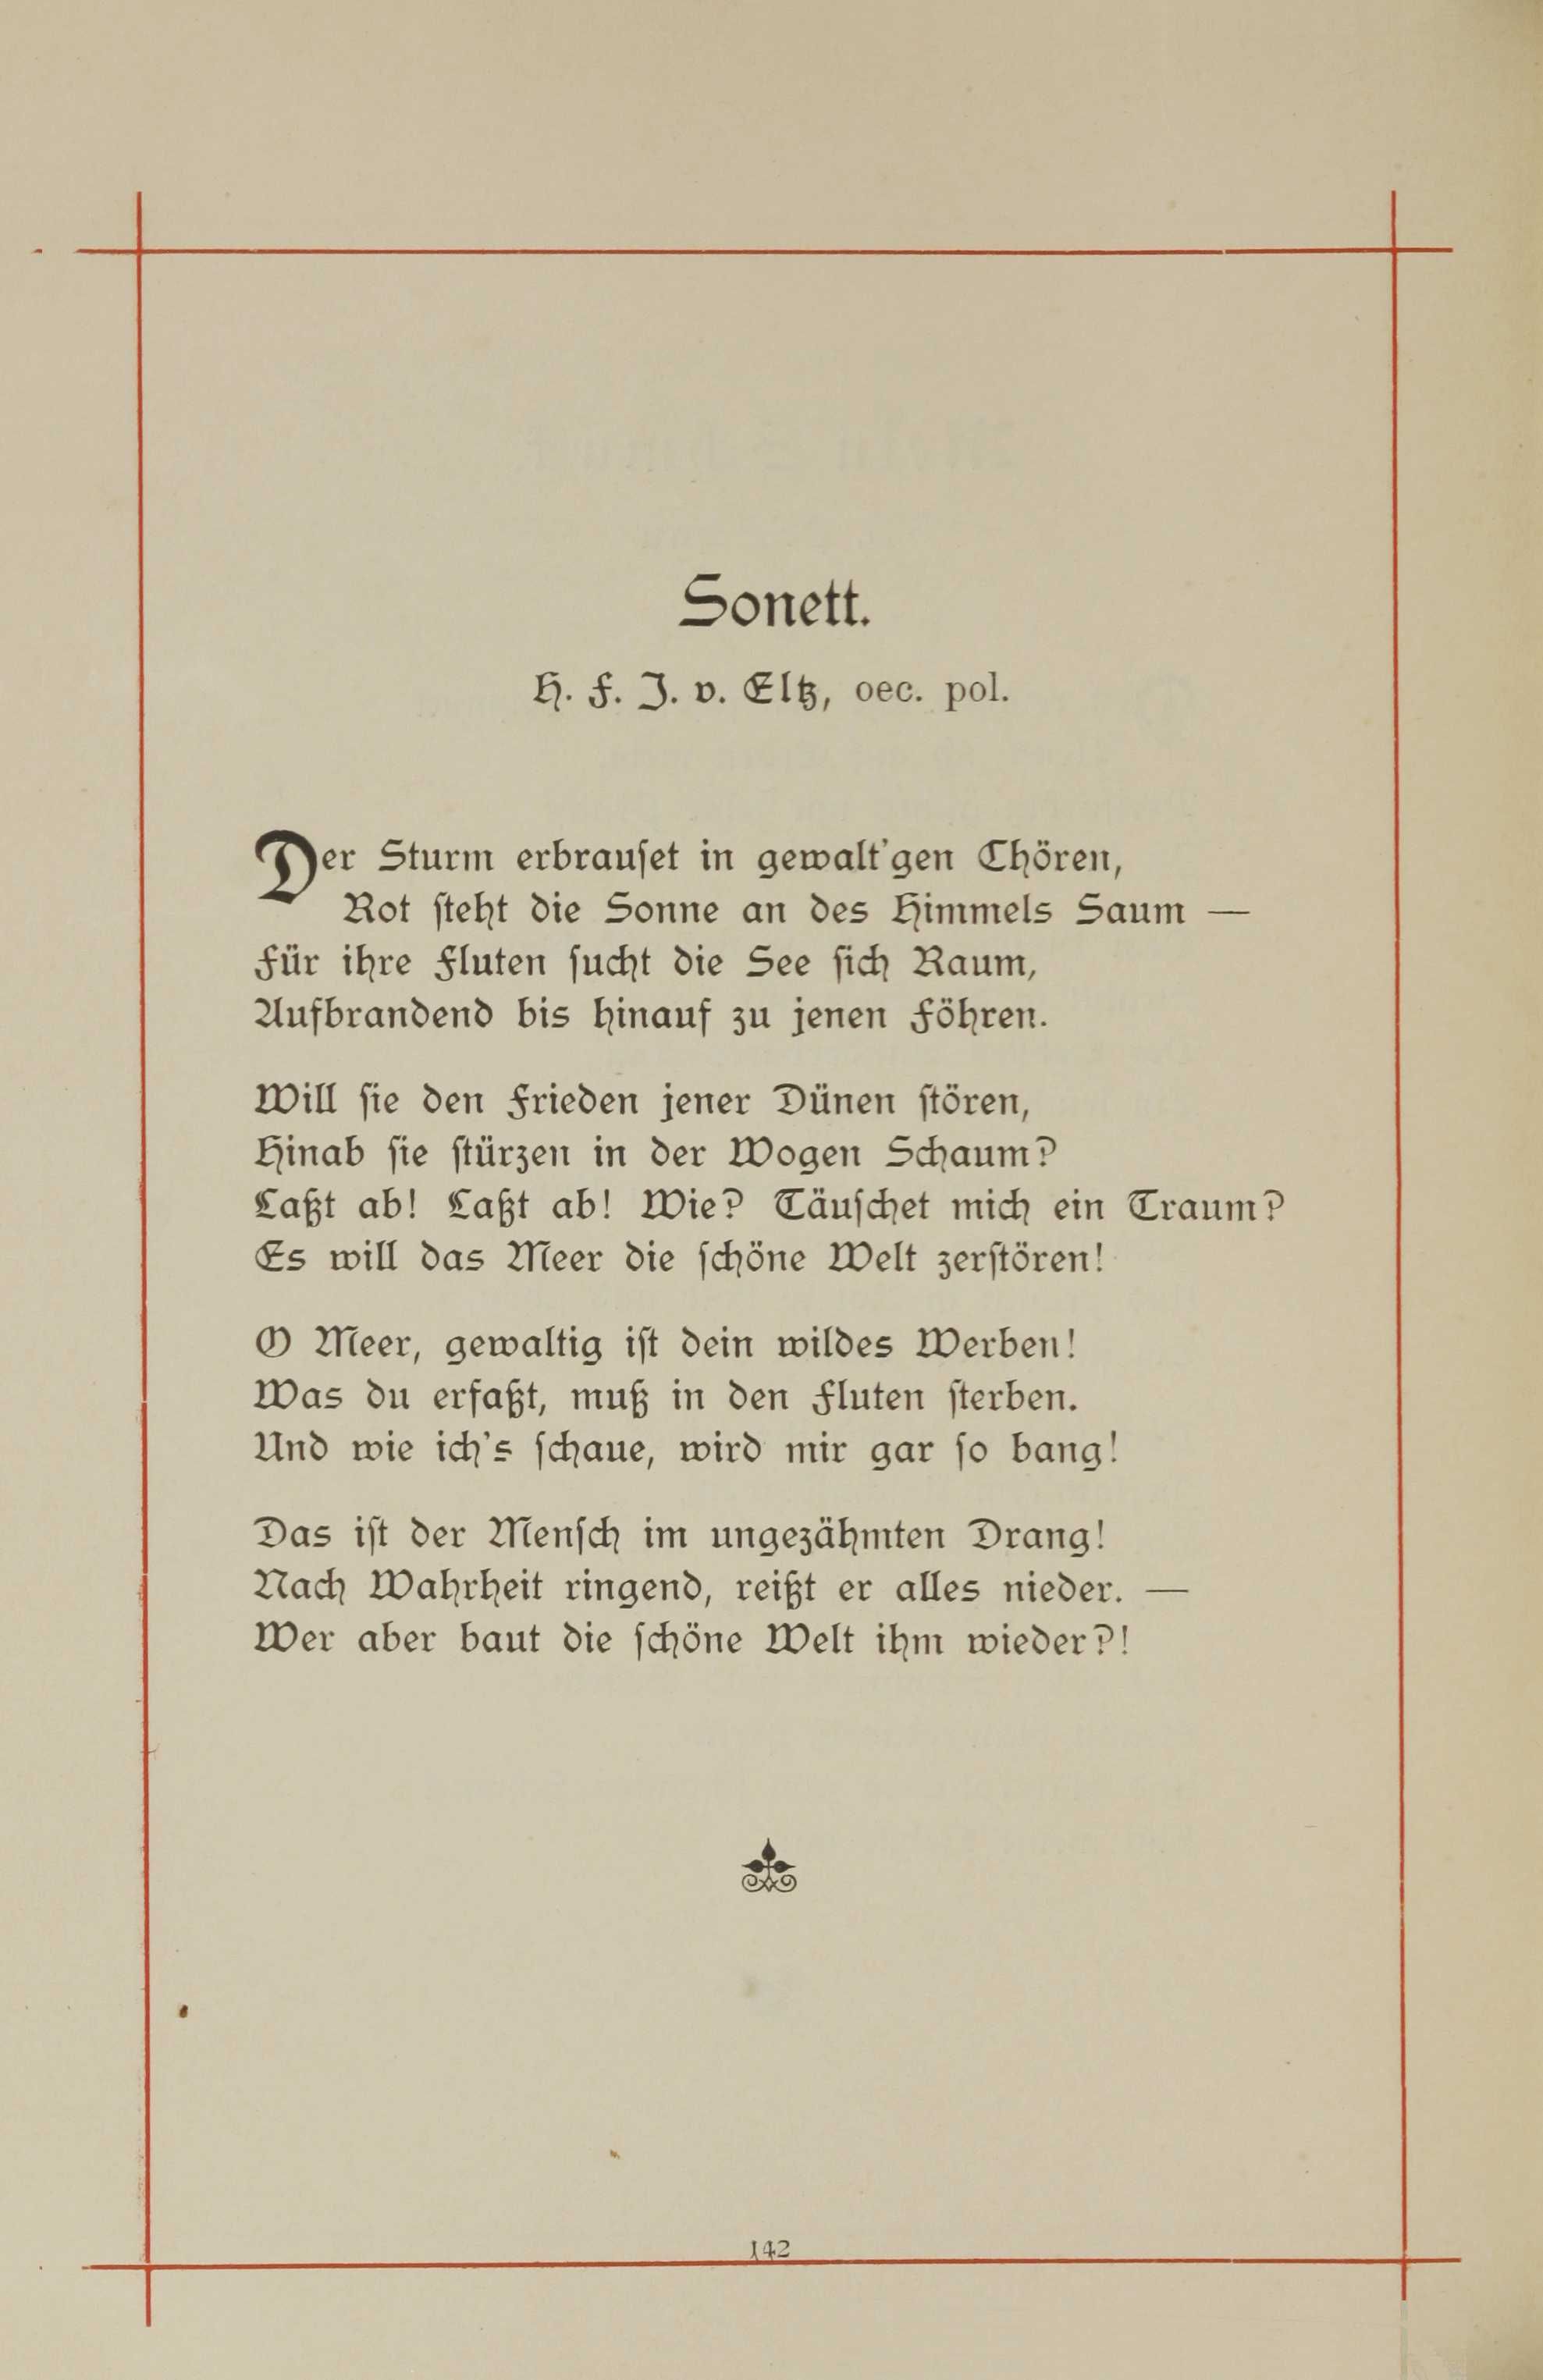 Sonett (1893) | 1. (142) Основной текст